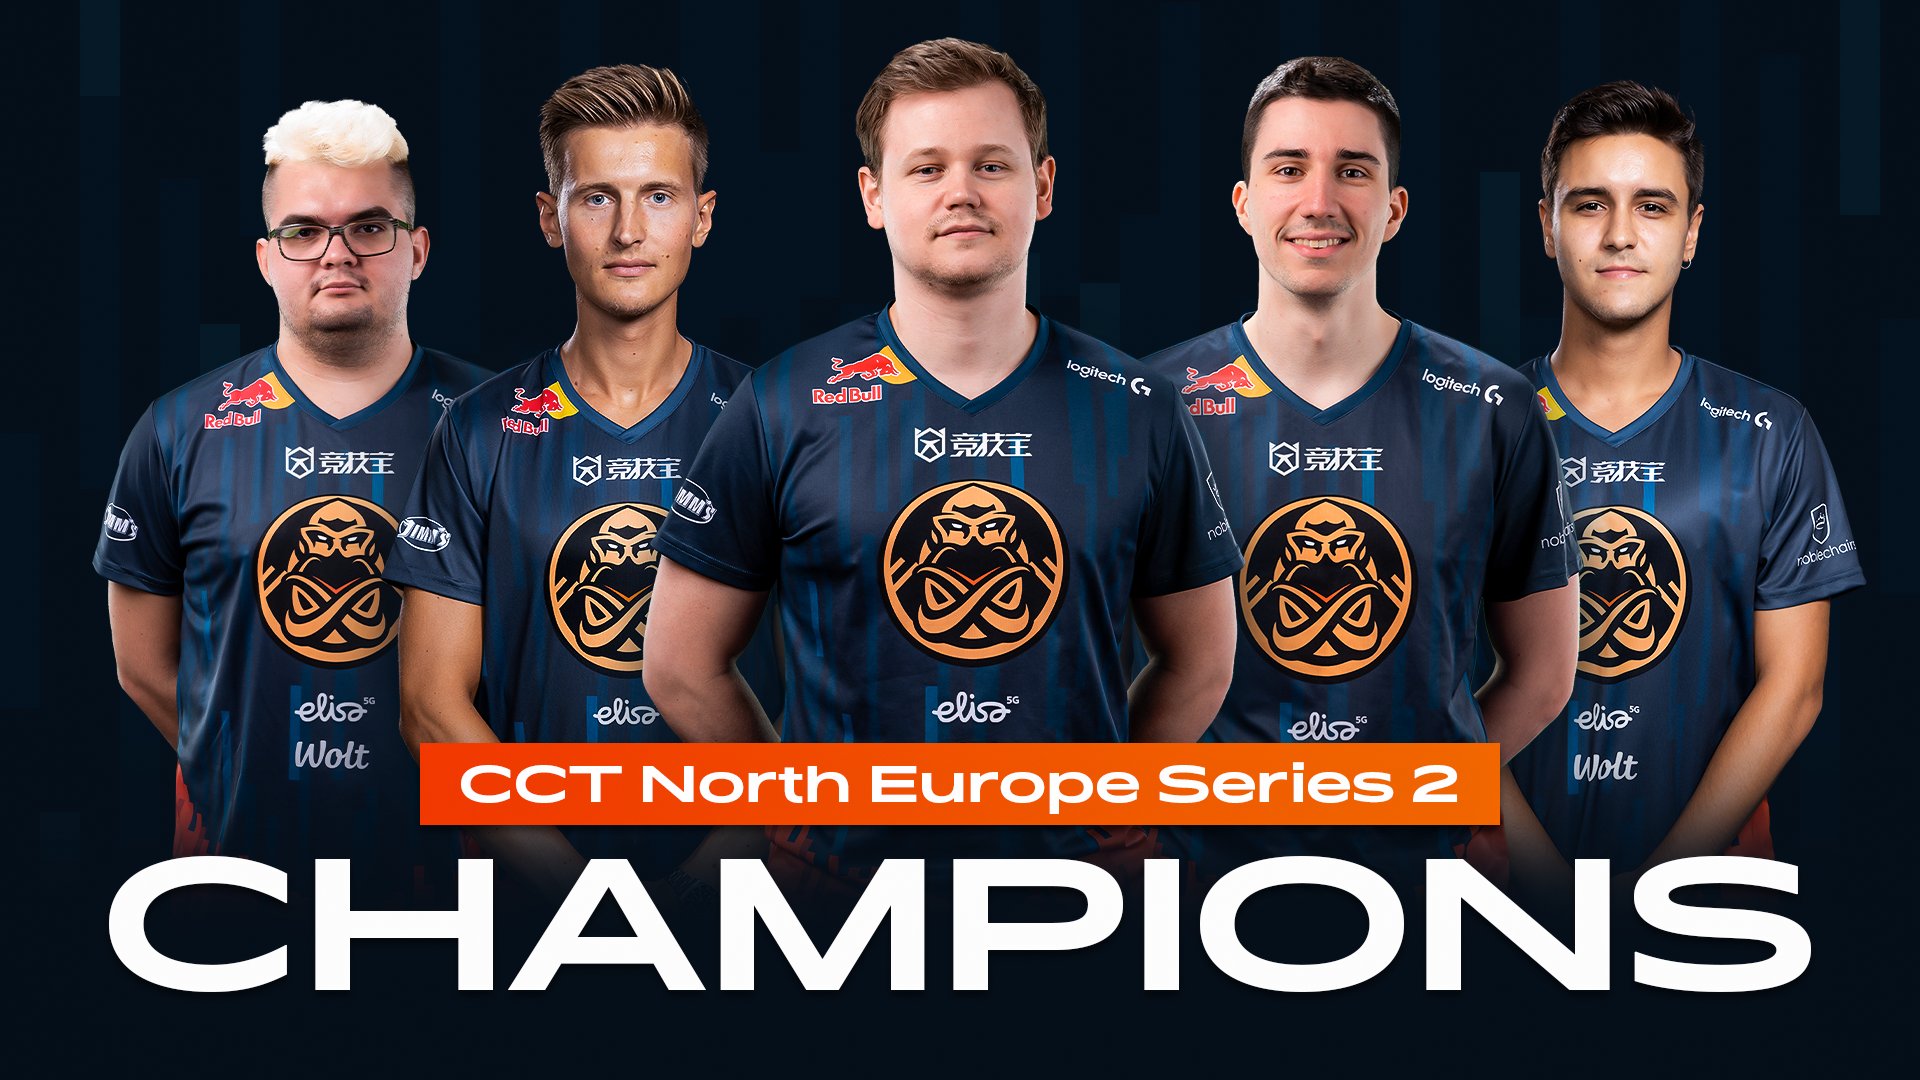 ENCE porazili ve finále HAVU a stávají se šampiony CCT North Europe Series 2